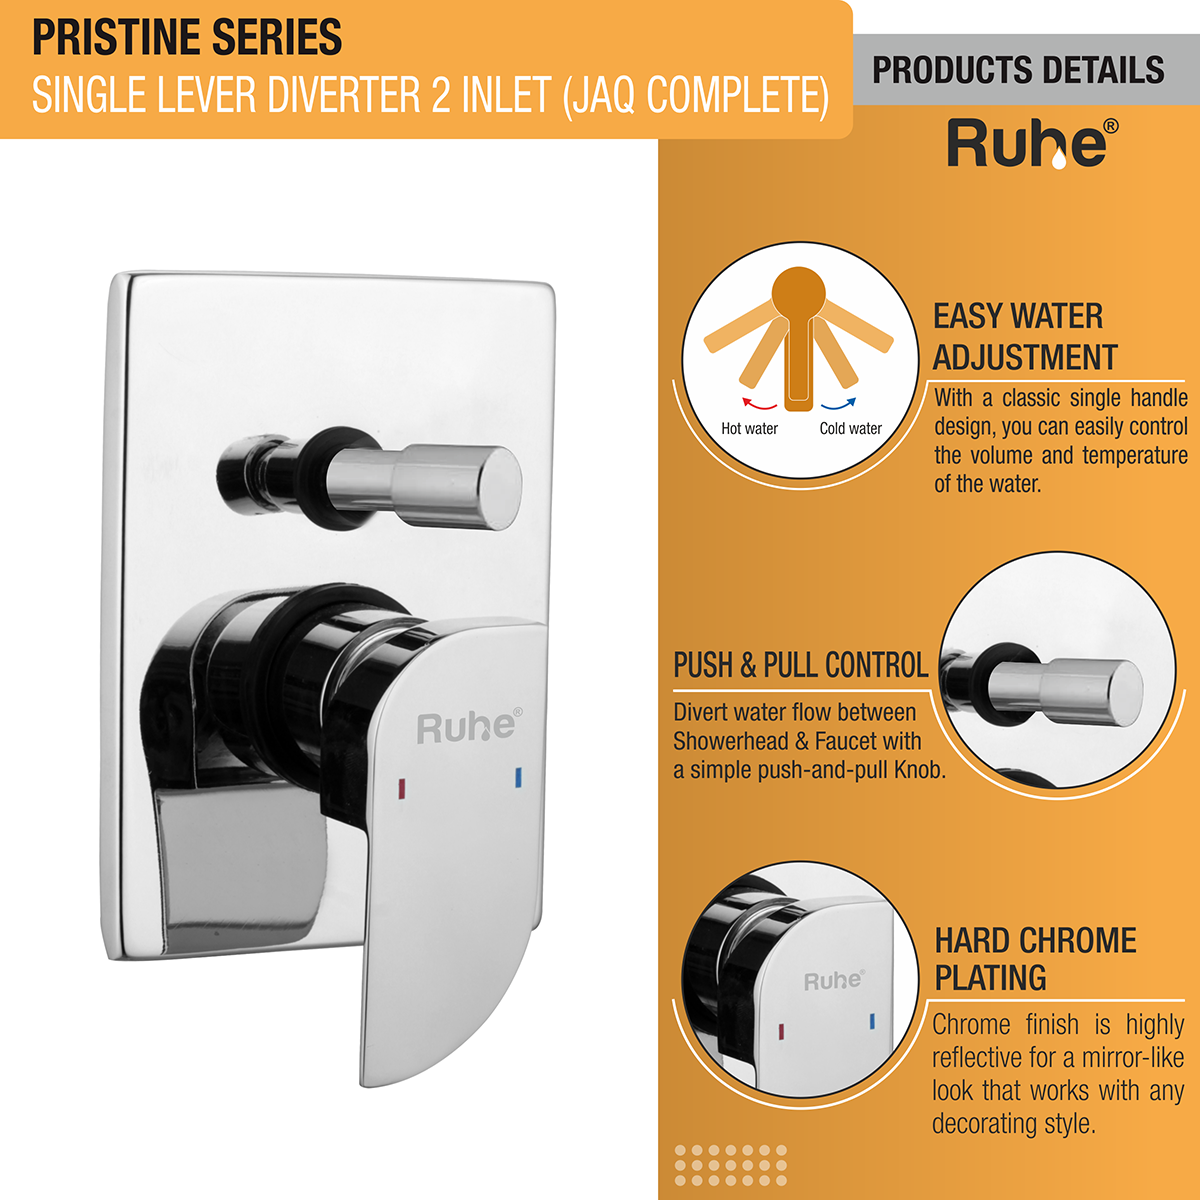 Pristine Single Lever 2-inlet Diverter (JAQ Complete Set) product details